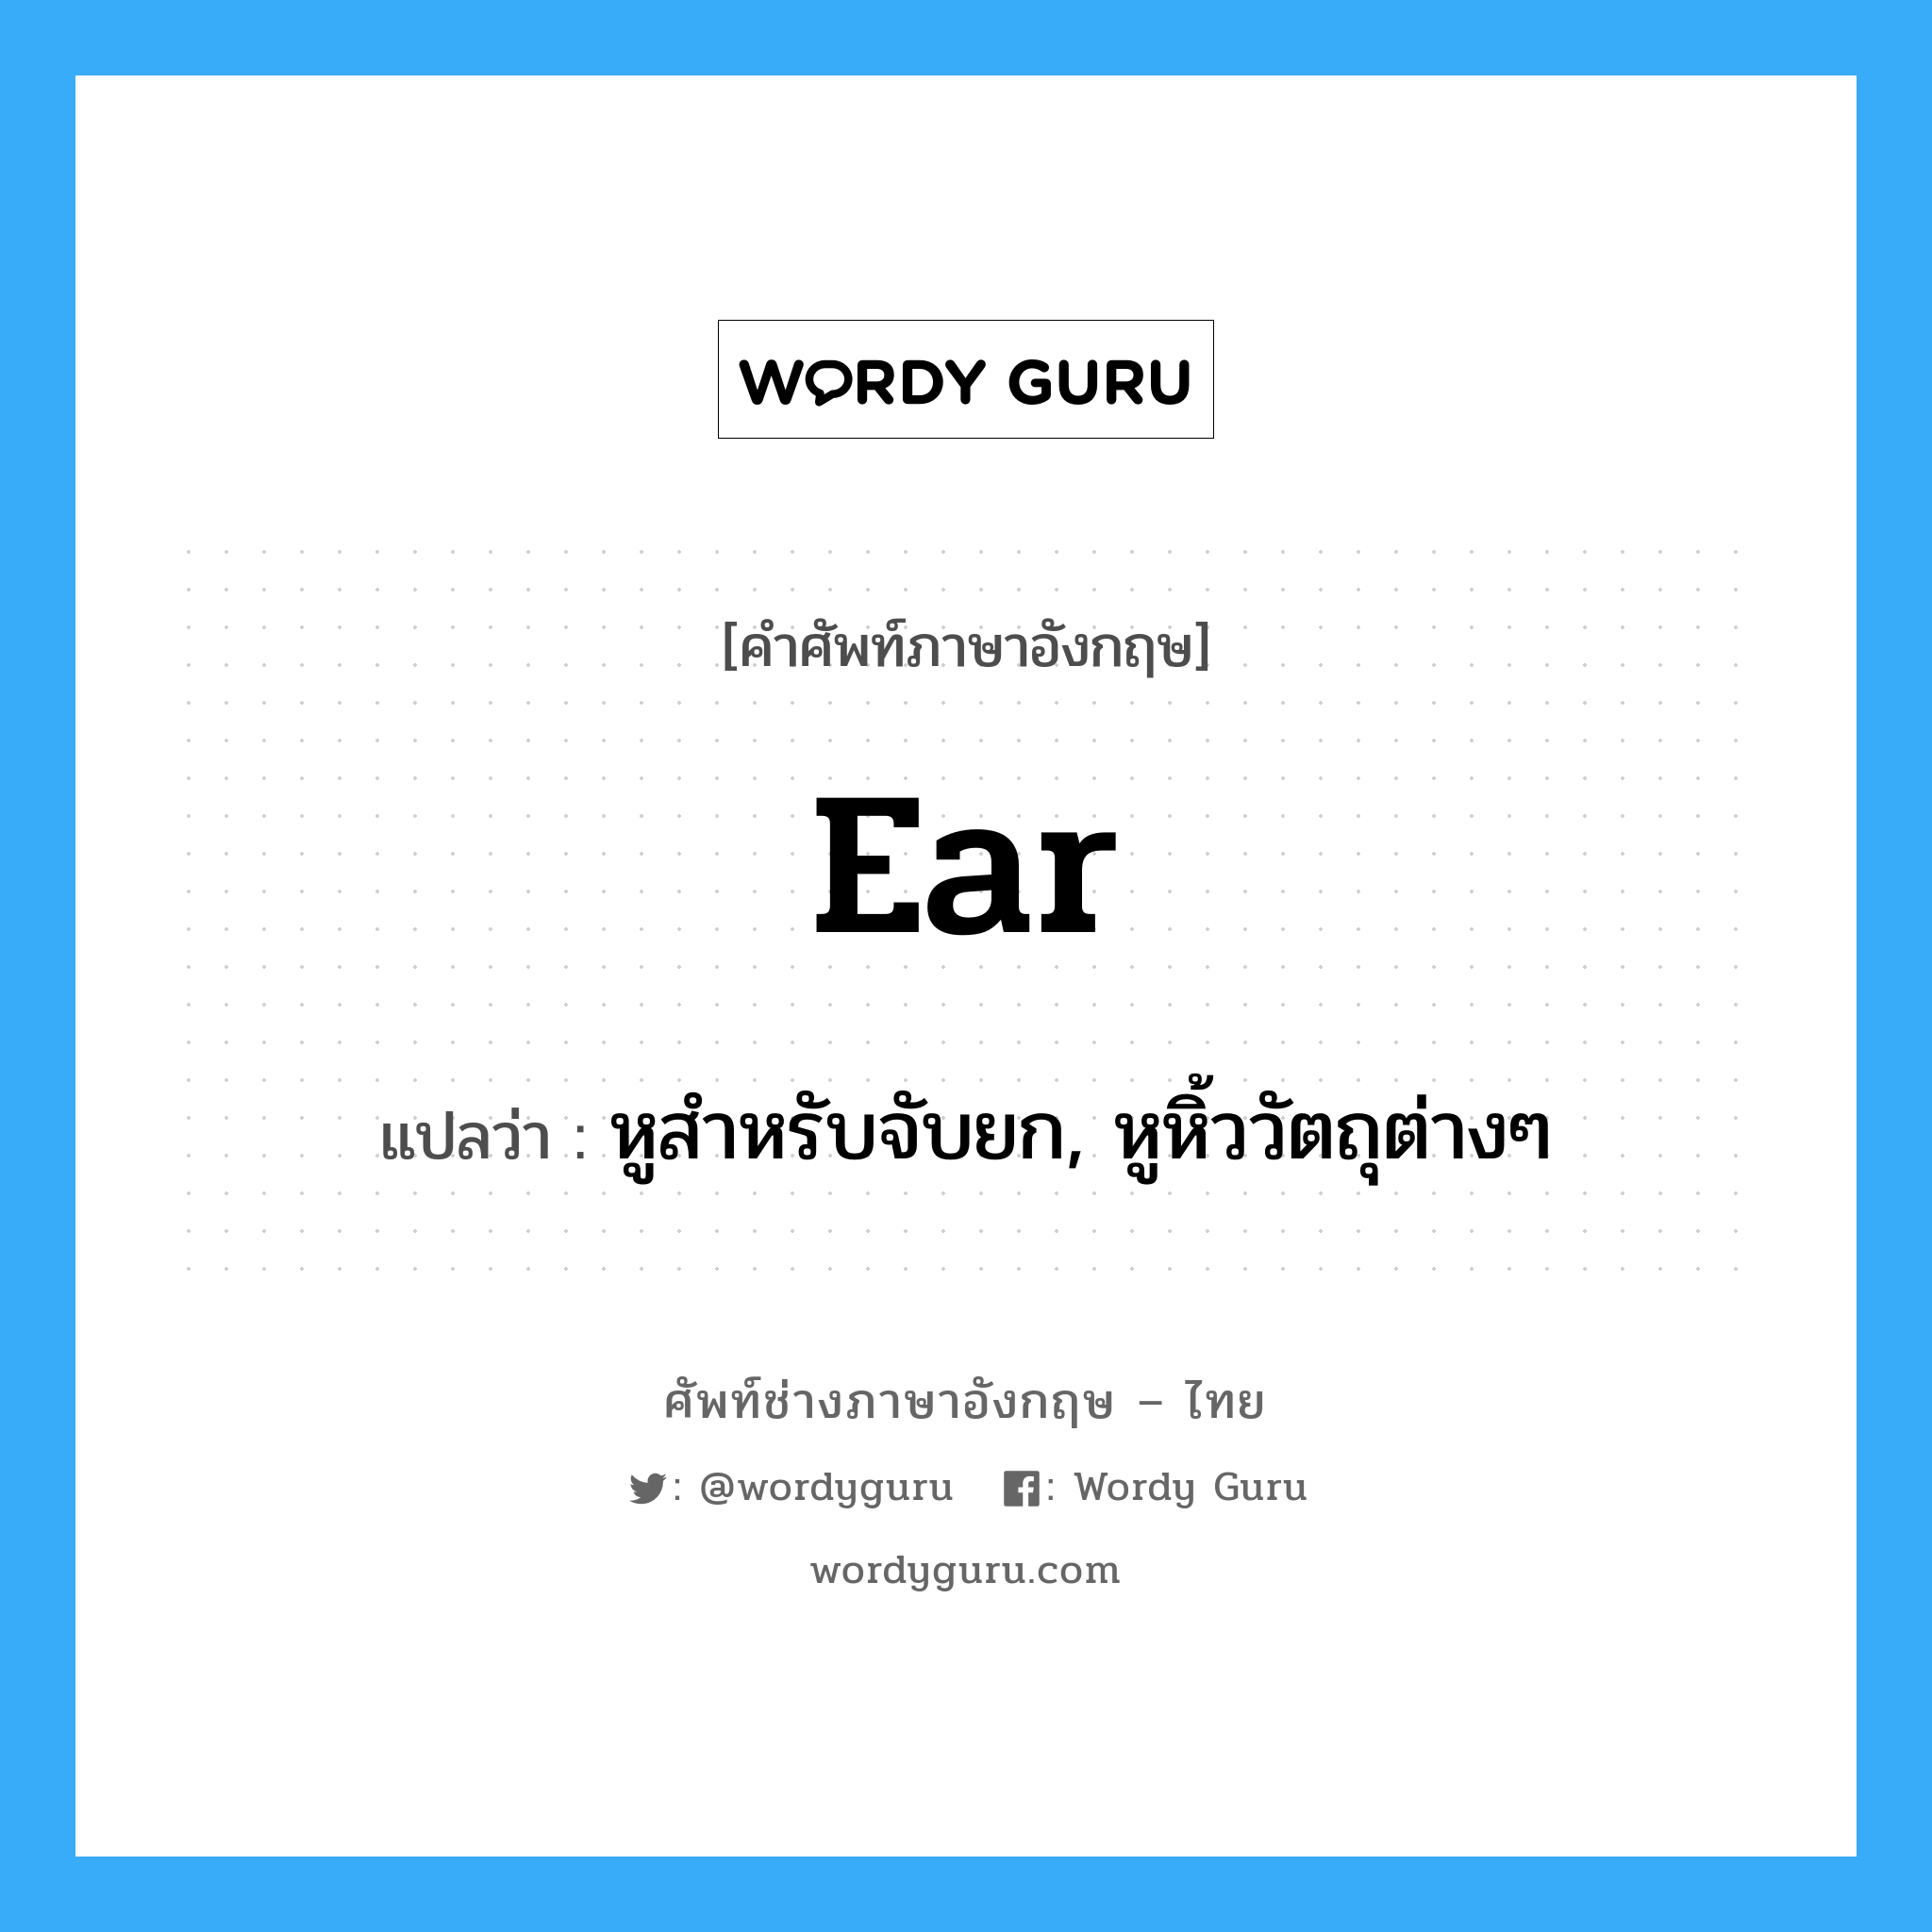 หูสำหรับจับยก, หูหิ้ววัตถุต่างๆ ภาษาอังกฤษ?, คำศัพท์ช่างภาษาอังกฤษ - ไทย หูสำหรับจับยก, หูหิ้ววัตถุต่างๆ คำศัพท์ภาษาอังกฤษ หูสำหรับจับยก, หูหิ้ววัตถุต่างๆ แปลว่า ear